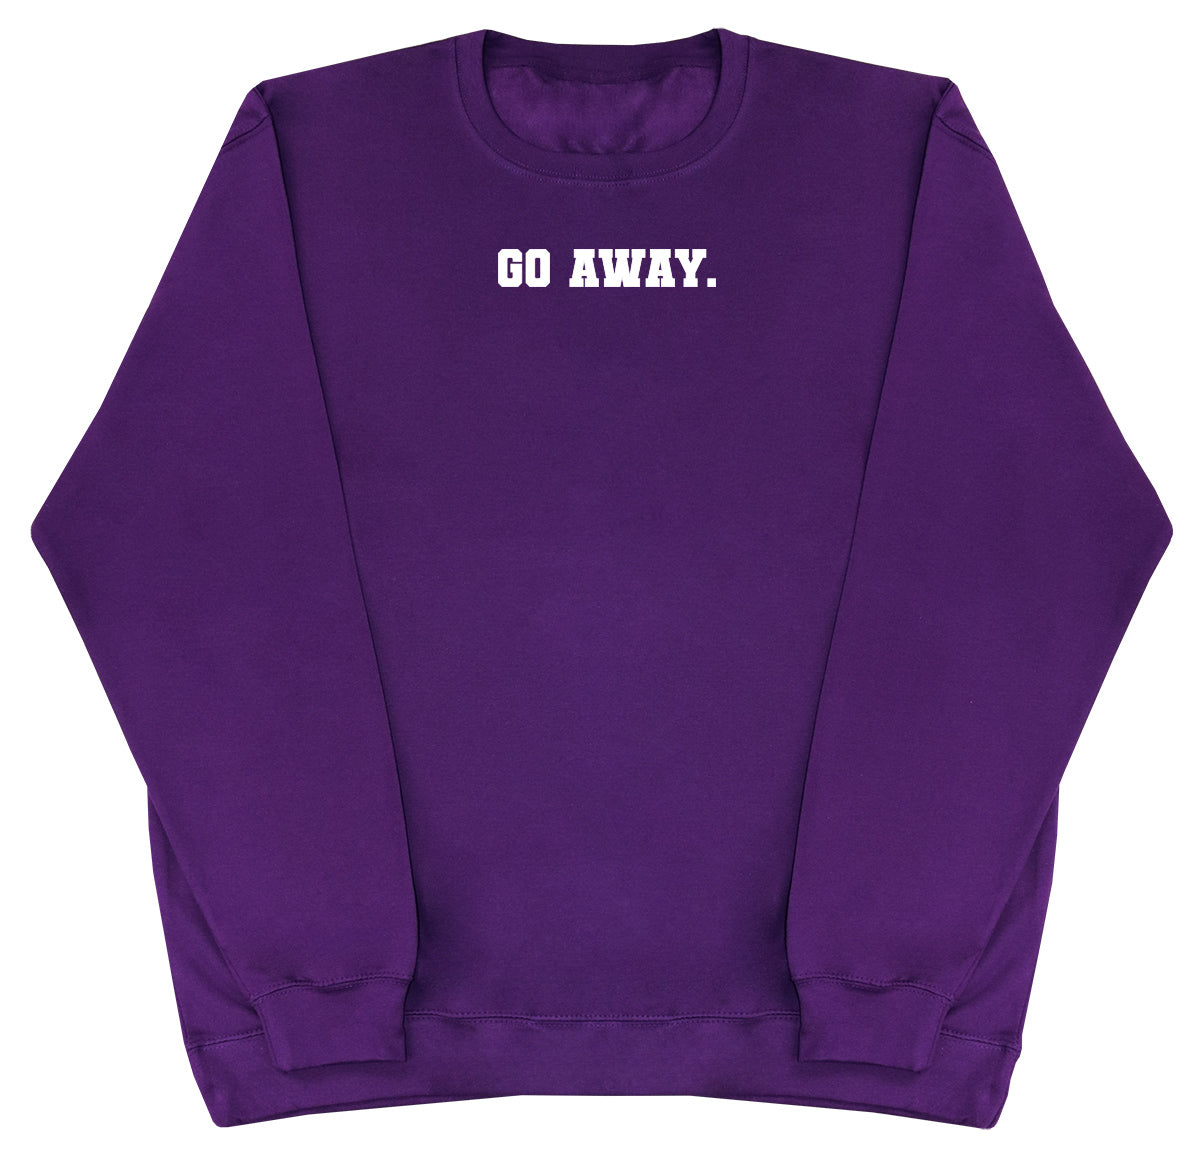 Go Away - Huge Oversized Comfy Original Sweater